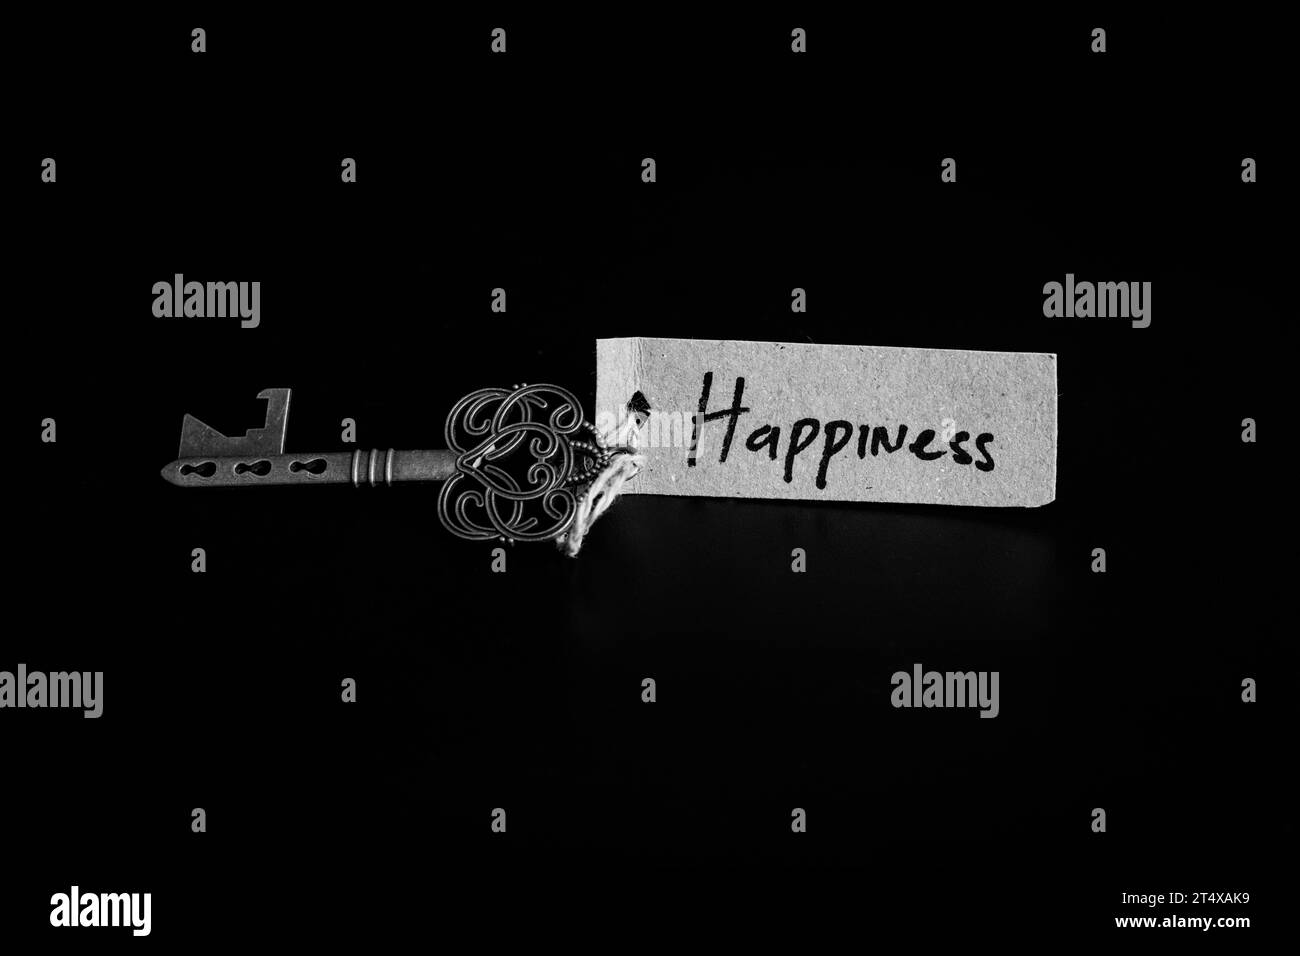 Alter dekorativer Schlüssel und handgeschriebenes Etikett 'Happiness', gebunden mit Strohseil auf schwarzem Hintergrund Stockfoto